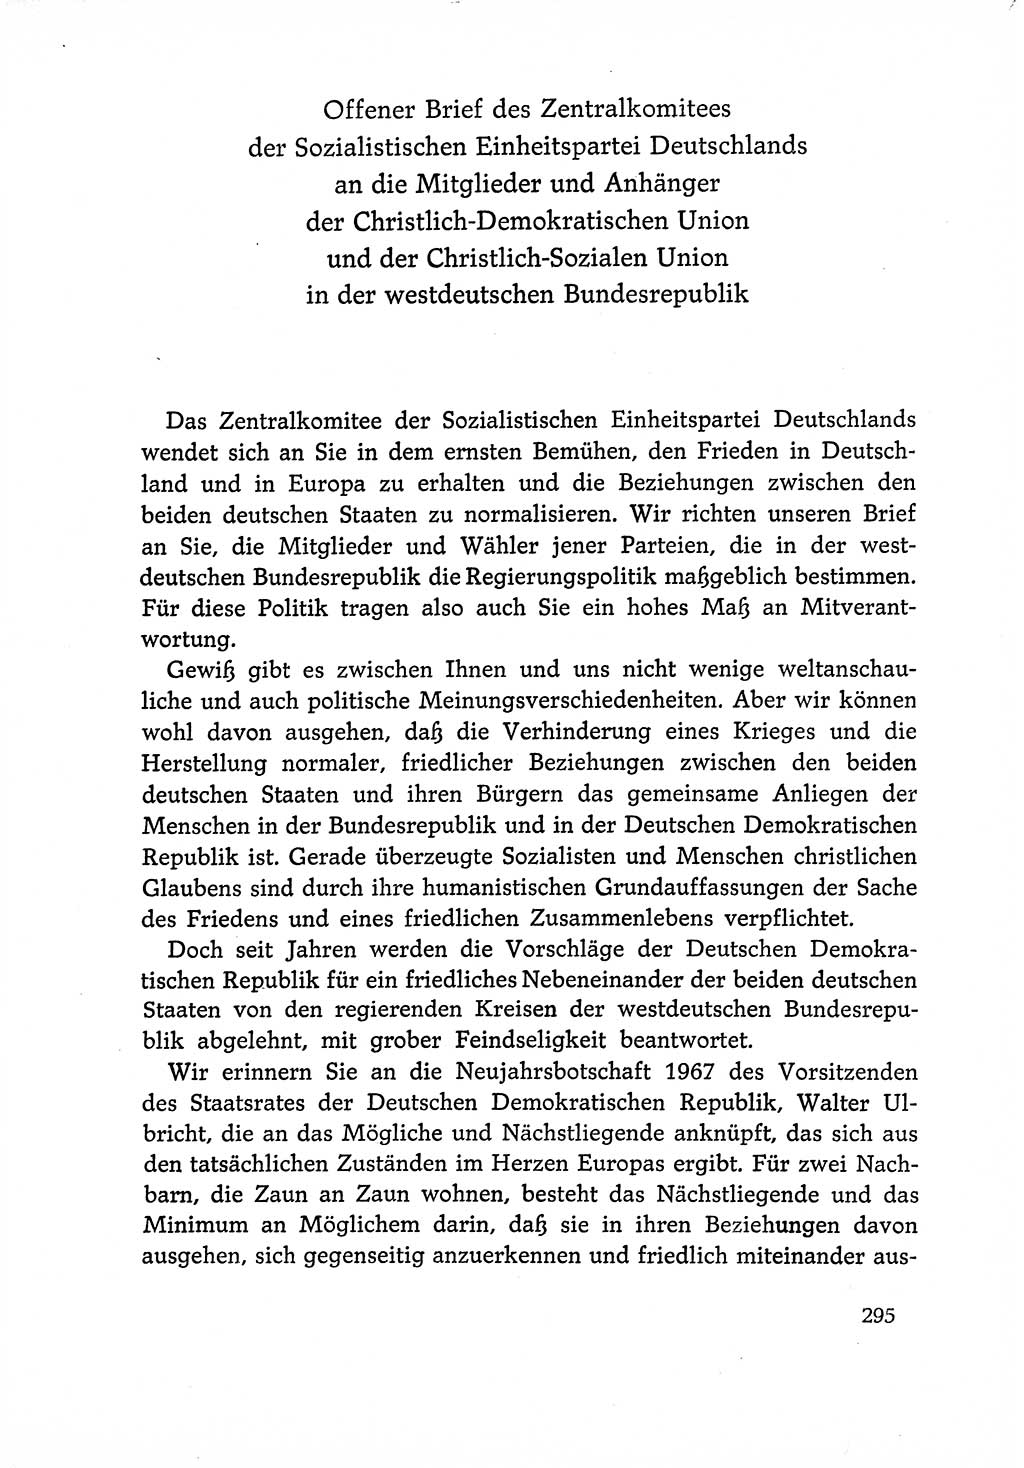 Dokumente der Sozialistischen Einheitspartei Deutschlands (SED) [Deutsche Demokratische Republik (DDR)] 1966-1967, Seite 295 (Dok. SED DDR 1966-1967, S. 295)